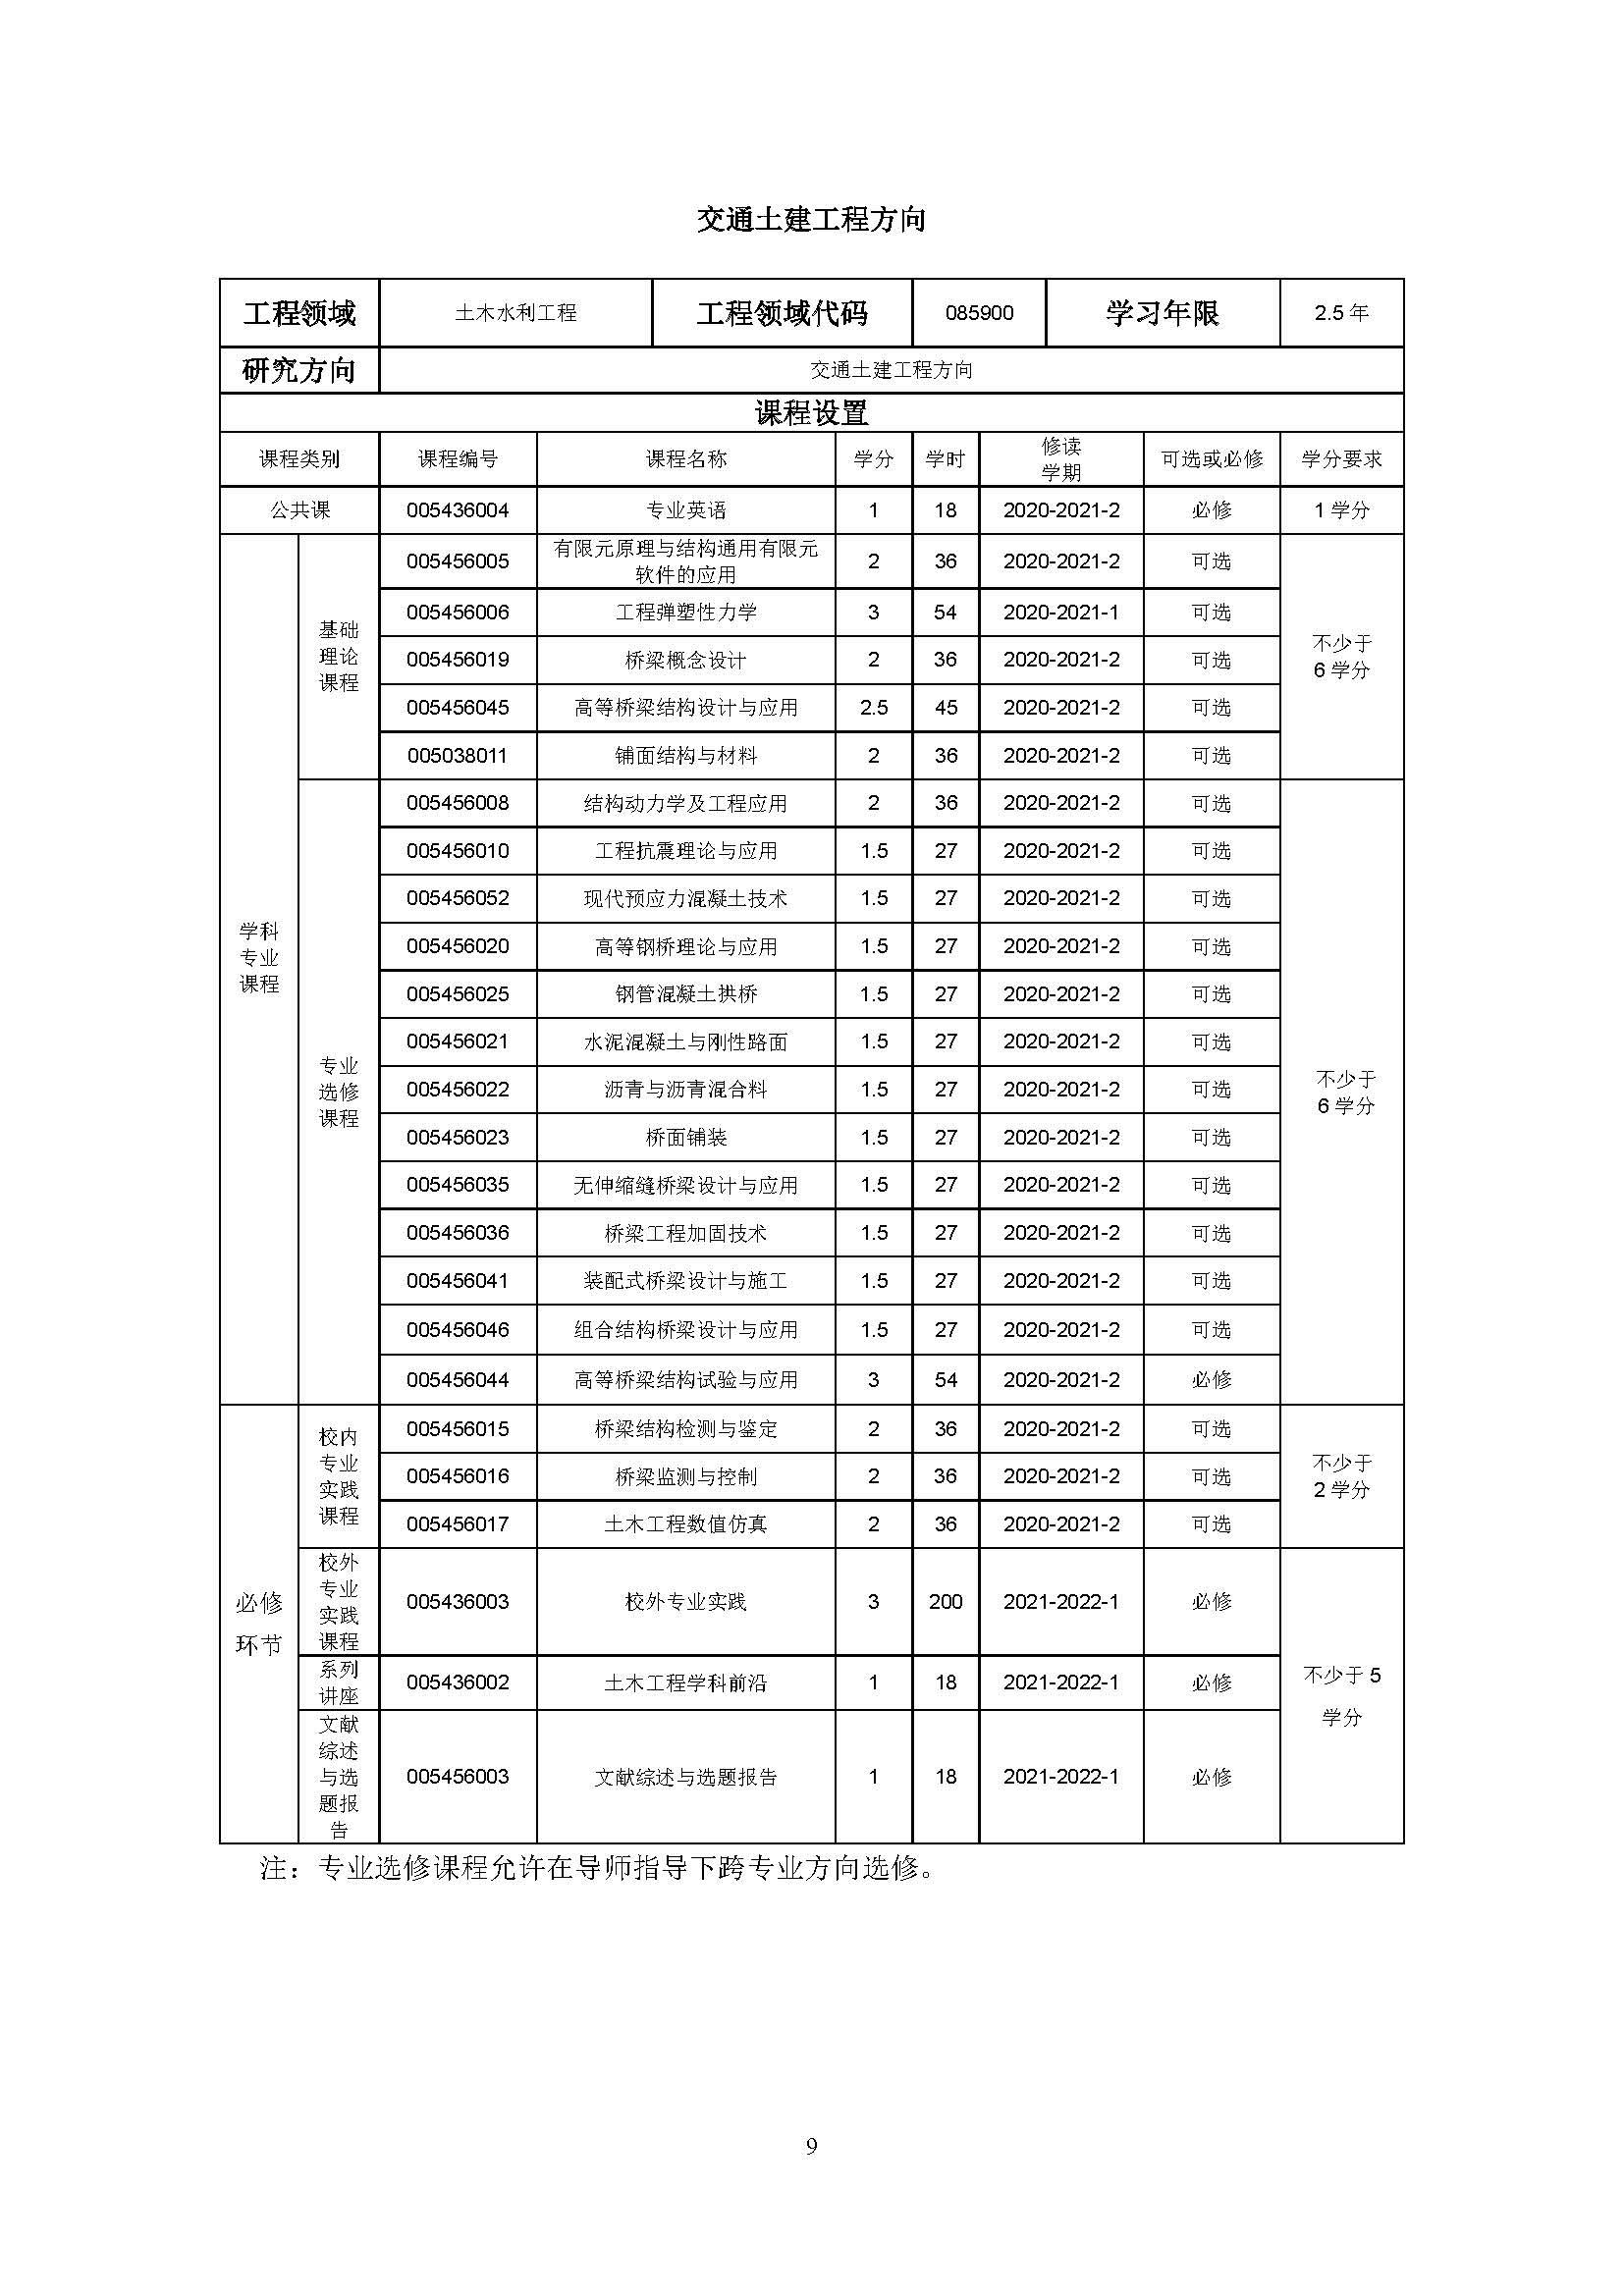 福州大学2020级土木水利专业研究生培养方案_页面_09